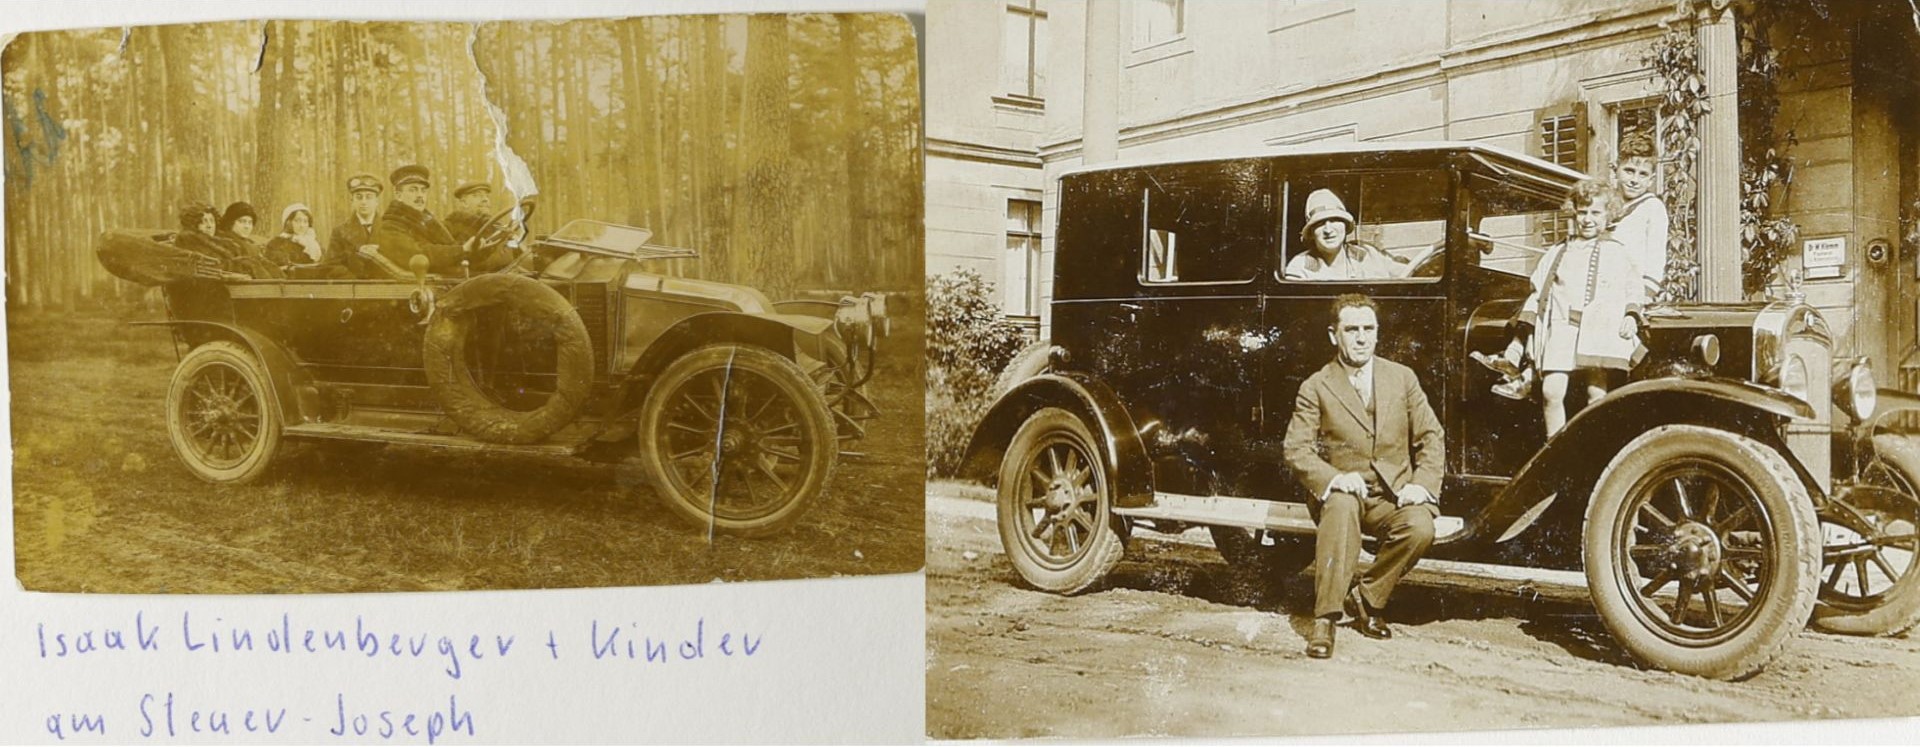 Zwei alte Fotografien, die jeweils mehrere Personen in einem Automobil bzw. davor zeigen.